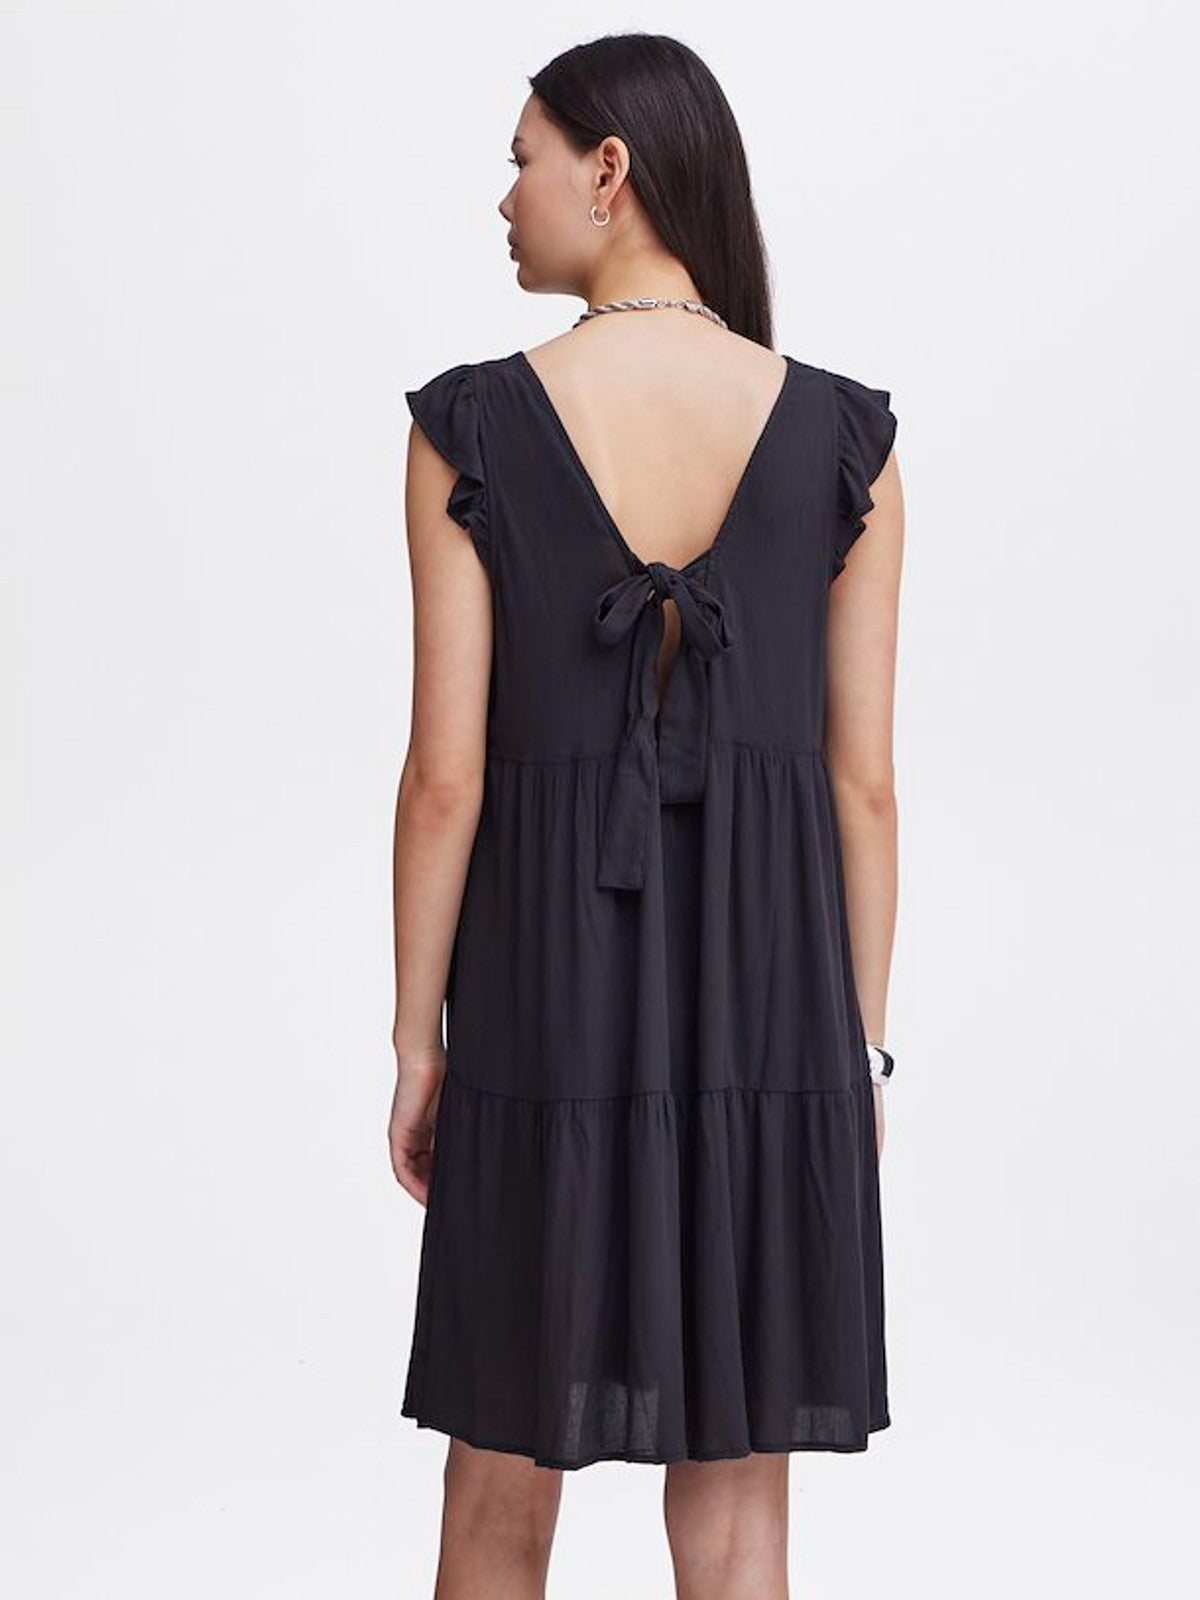 Marrakech Black Sleeveless Dress